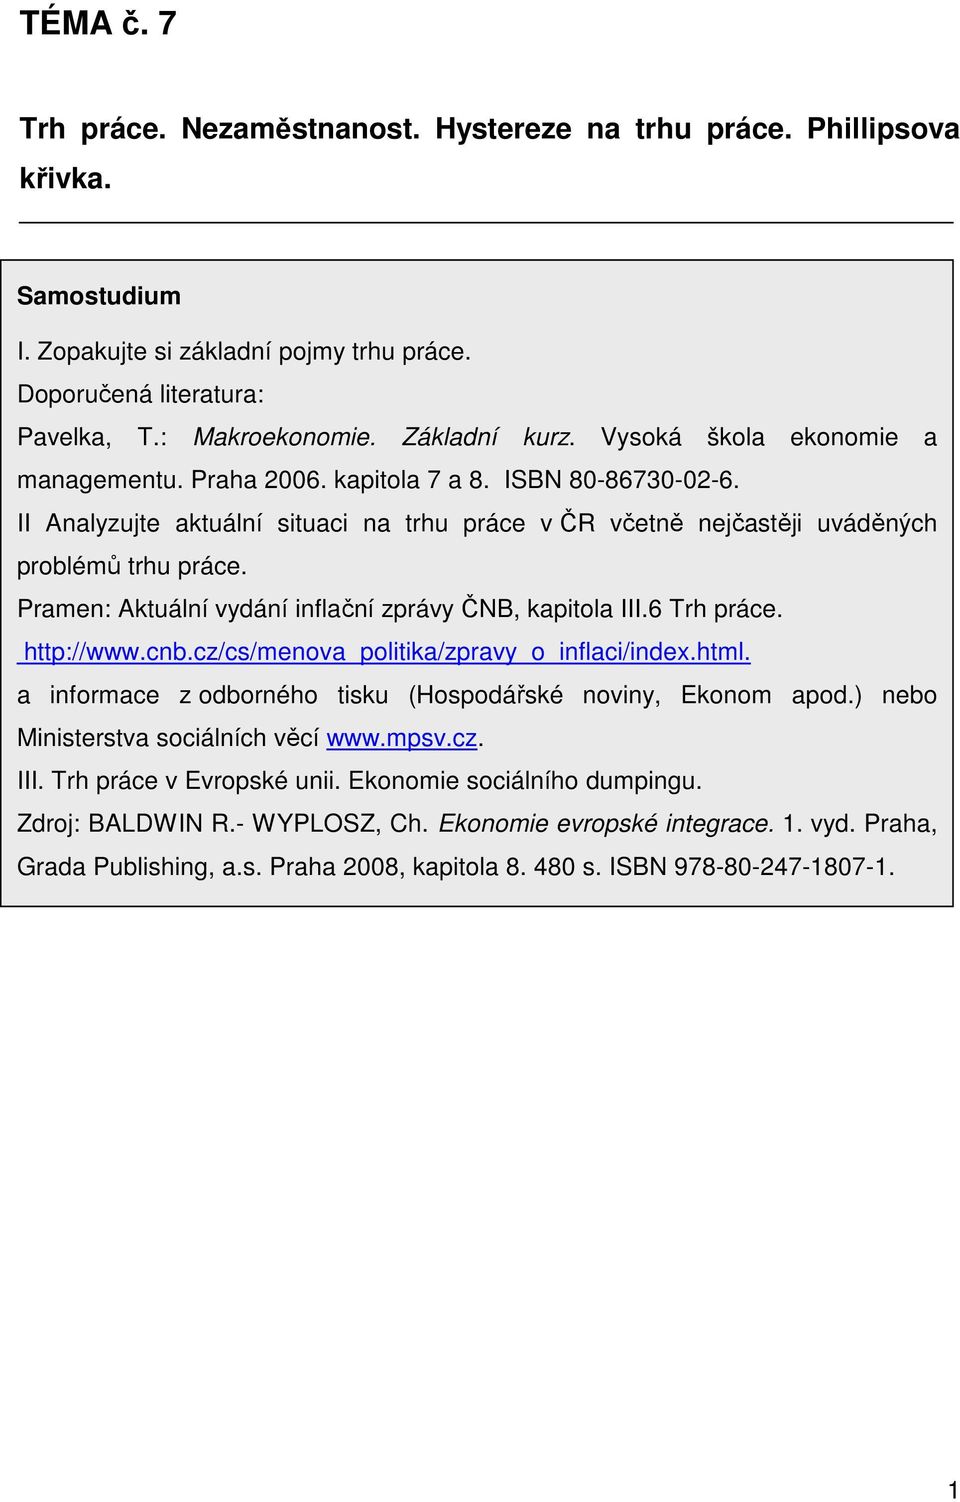 Pramen: Aktuální vydání inflační zprávy ČNB, kapitola III.6 Trh práce. http://www.cnb.cz/cs/menova_politika/zpravy_o_inflaci/index.html. a informace z odborného tisku (Hospodářské noviny, Ekonom apod.